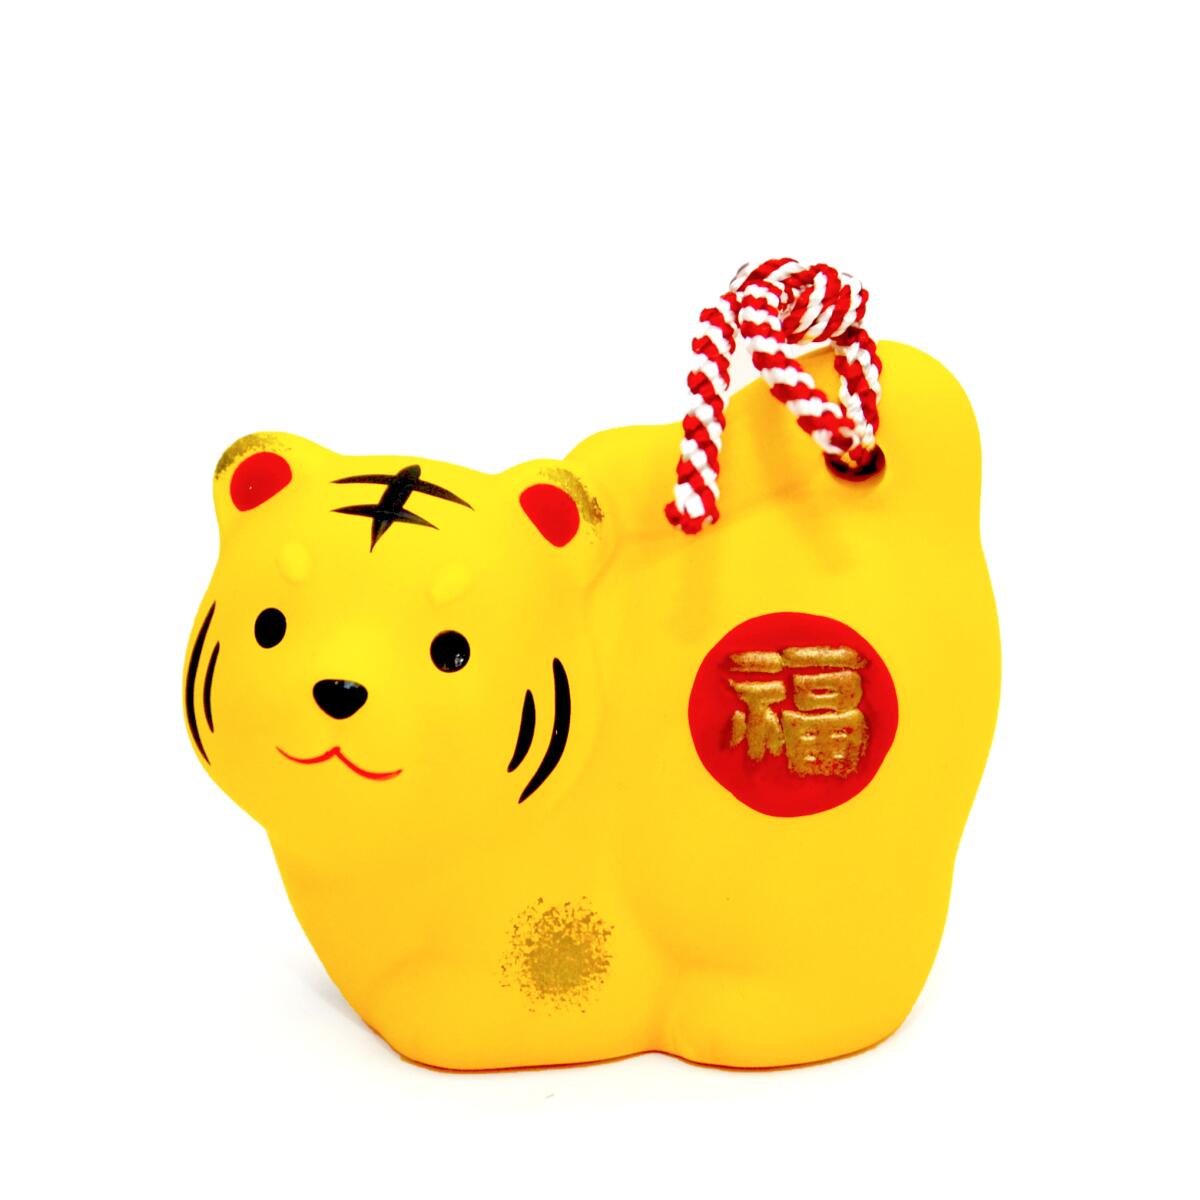 Un adorno de campana amarilla con forma de tigre